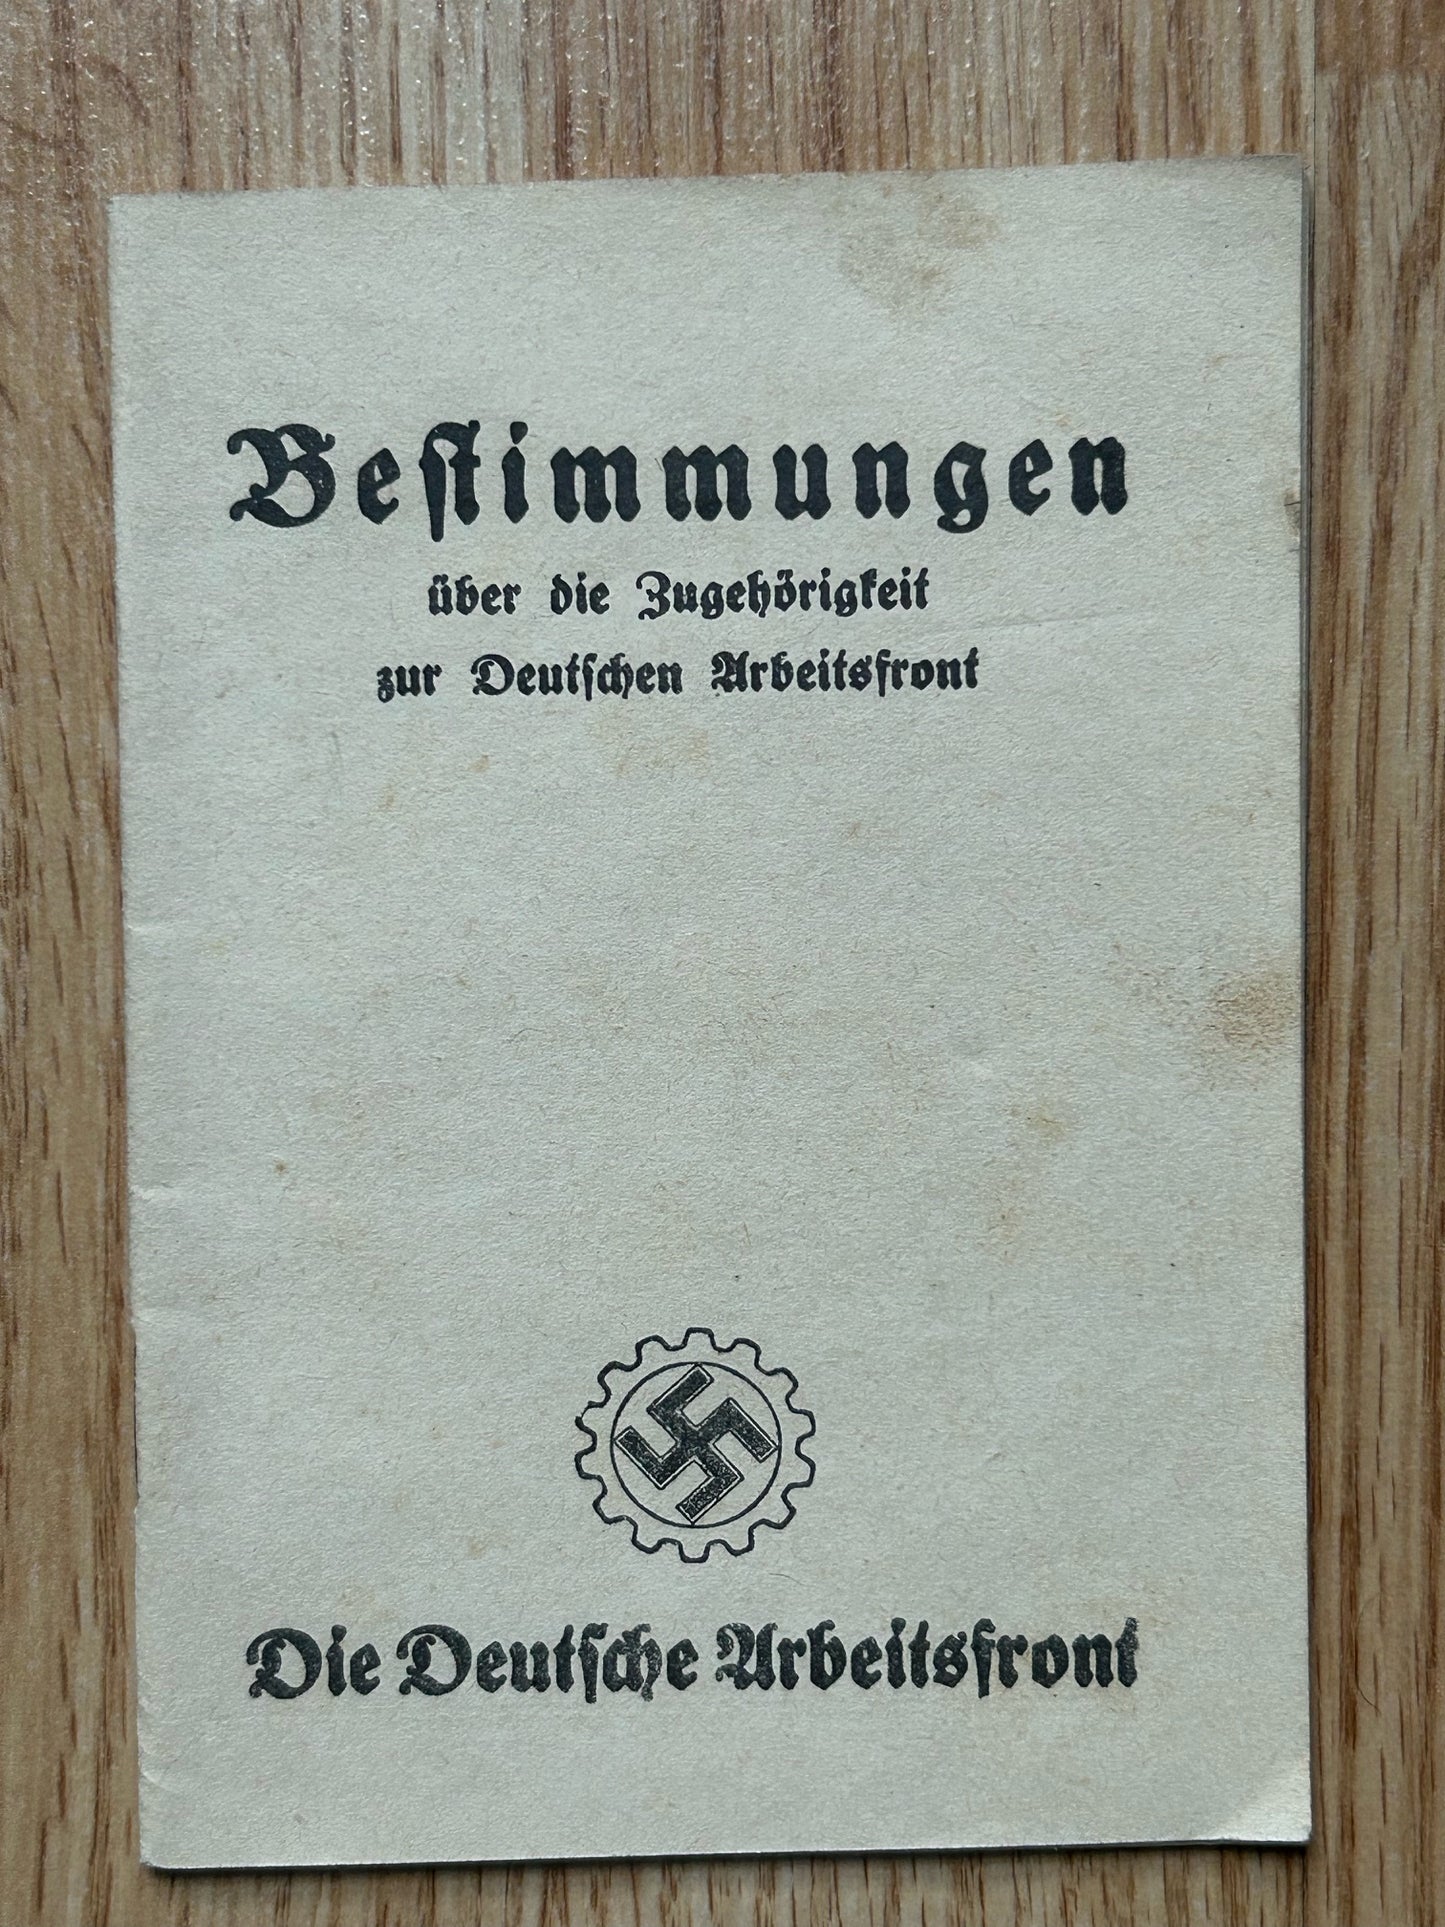 Regulations booklet - Deutsche Arbeitsfront / DAF